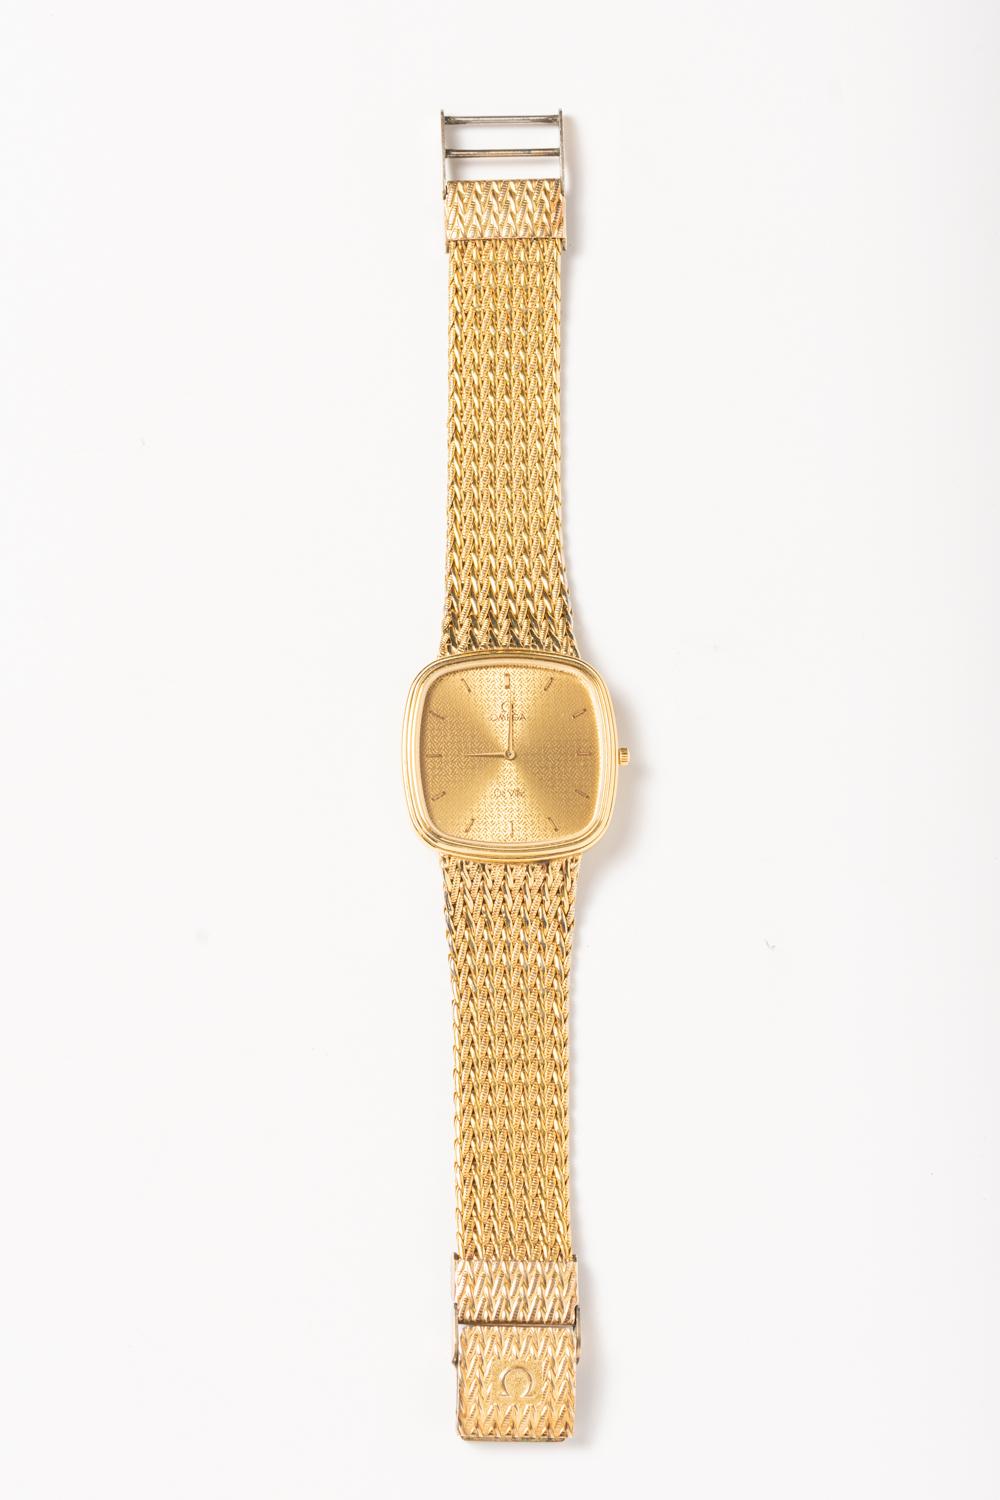 Montre-bracelet Vintage Omega De Ville Gold Tone pour hommes 3